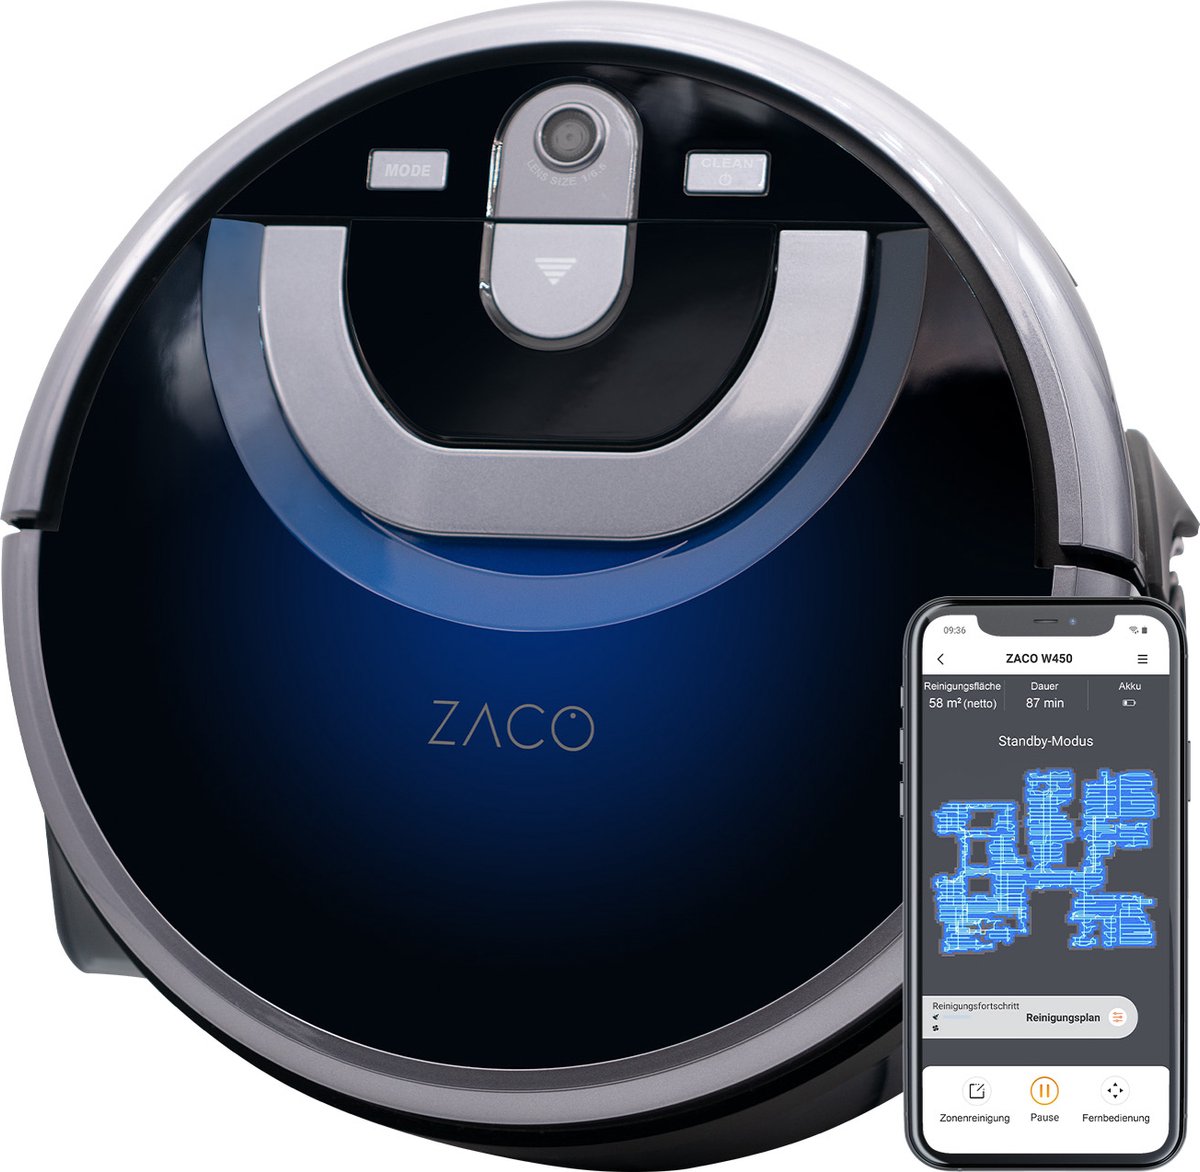 ZACO W450 - dweilrobot met aparte schoon- en vuilwatertank - 80min dweilen - met laadstation - bediening met App, Alexa, Google Home - automatisch dweilen - voor harde vloer, houten vloer, parket - intelligente navigatie - tapijtdetectie